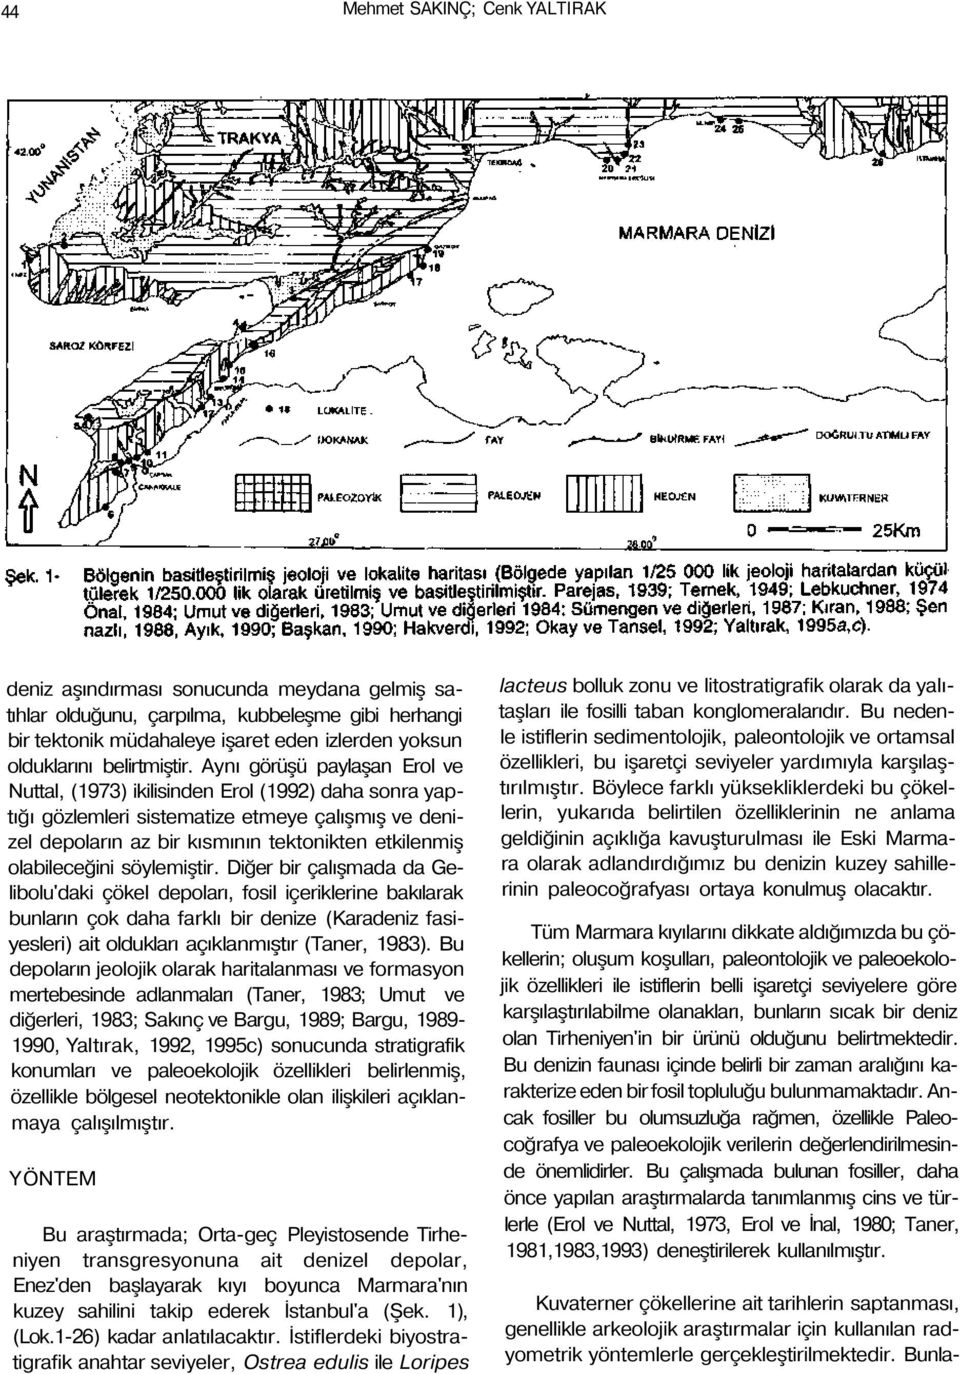 Aynı görüşü paylaşan Erol ve Nuttal, (1973) ikilisinden Erol (1992) daha sonra yaptığı gözlemleri sistematize etmeye çalışmış ve denizel depoların az bir kısmının tektonikten etkilenmiş olabileceğini